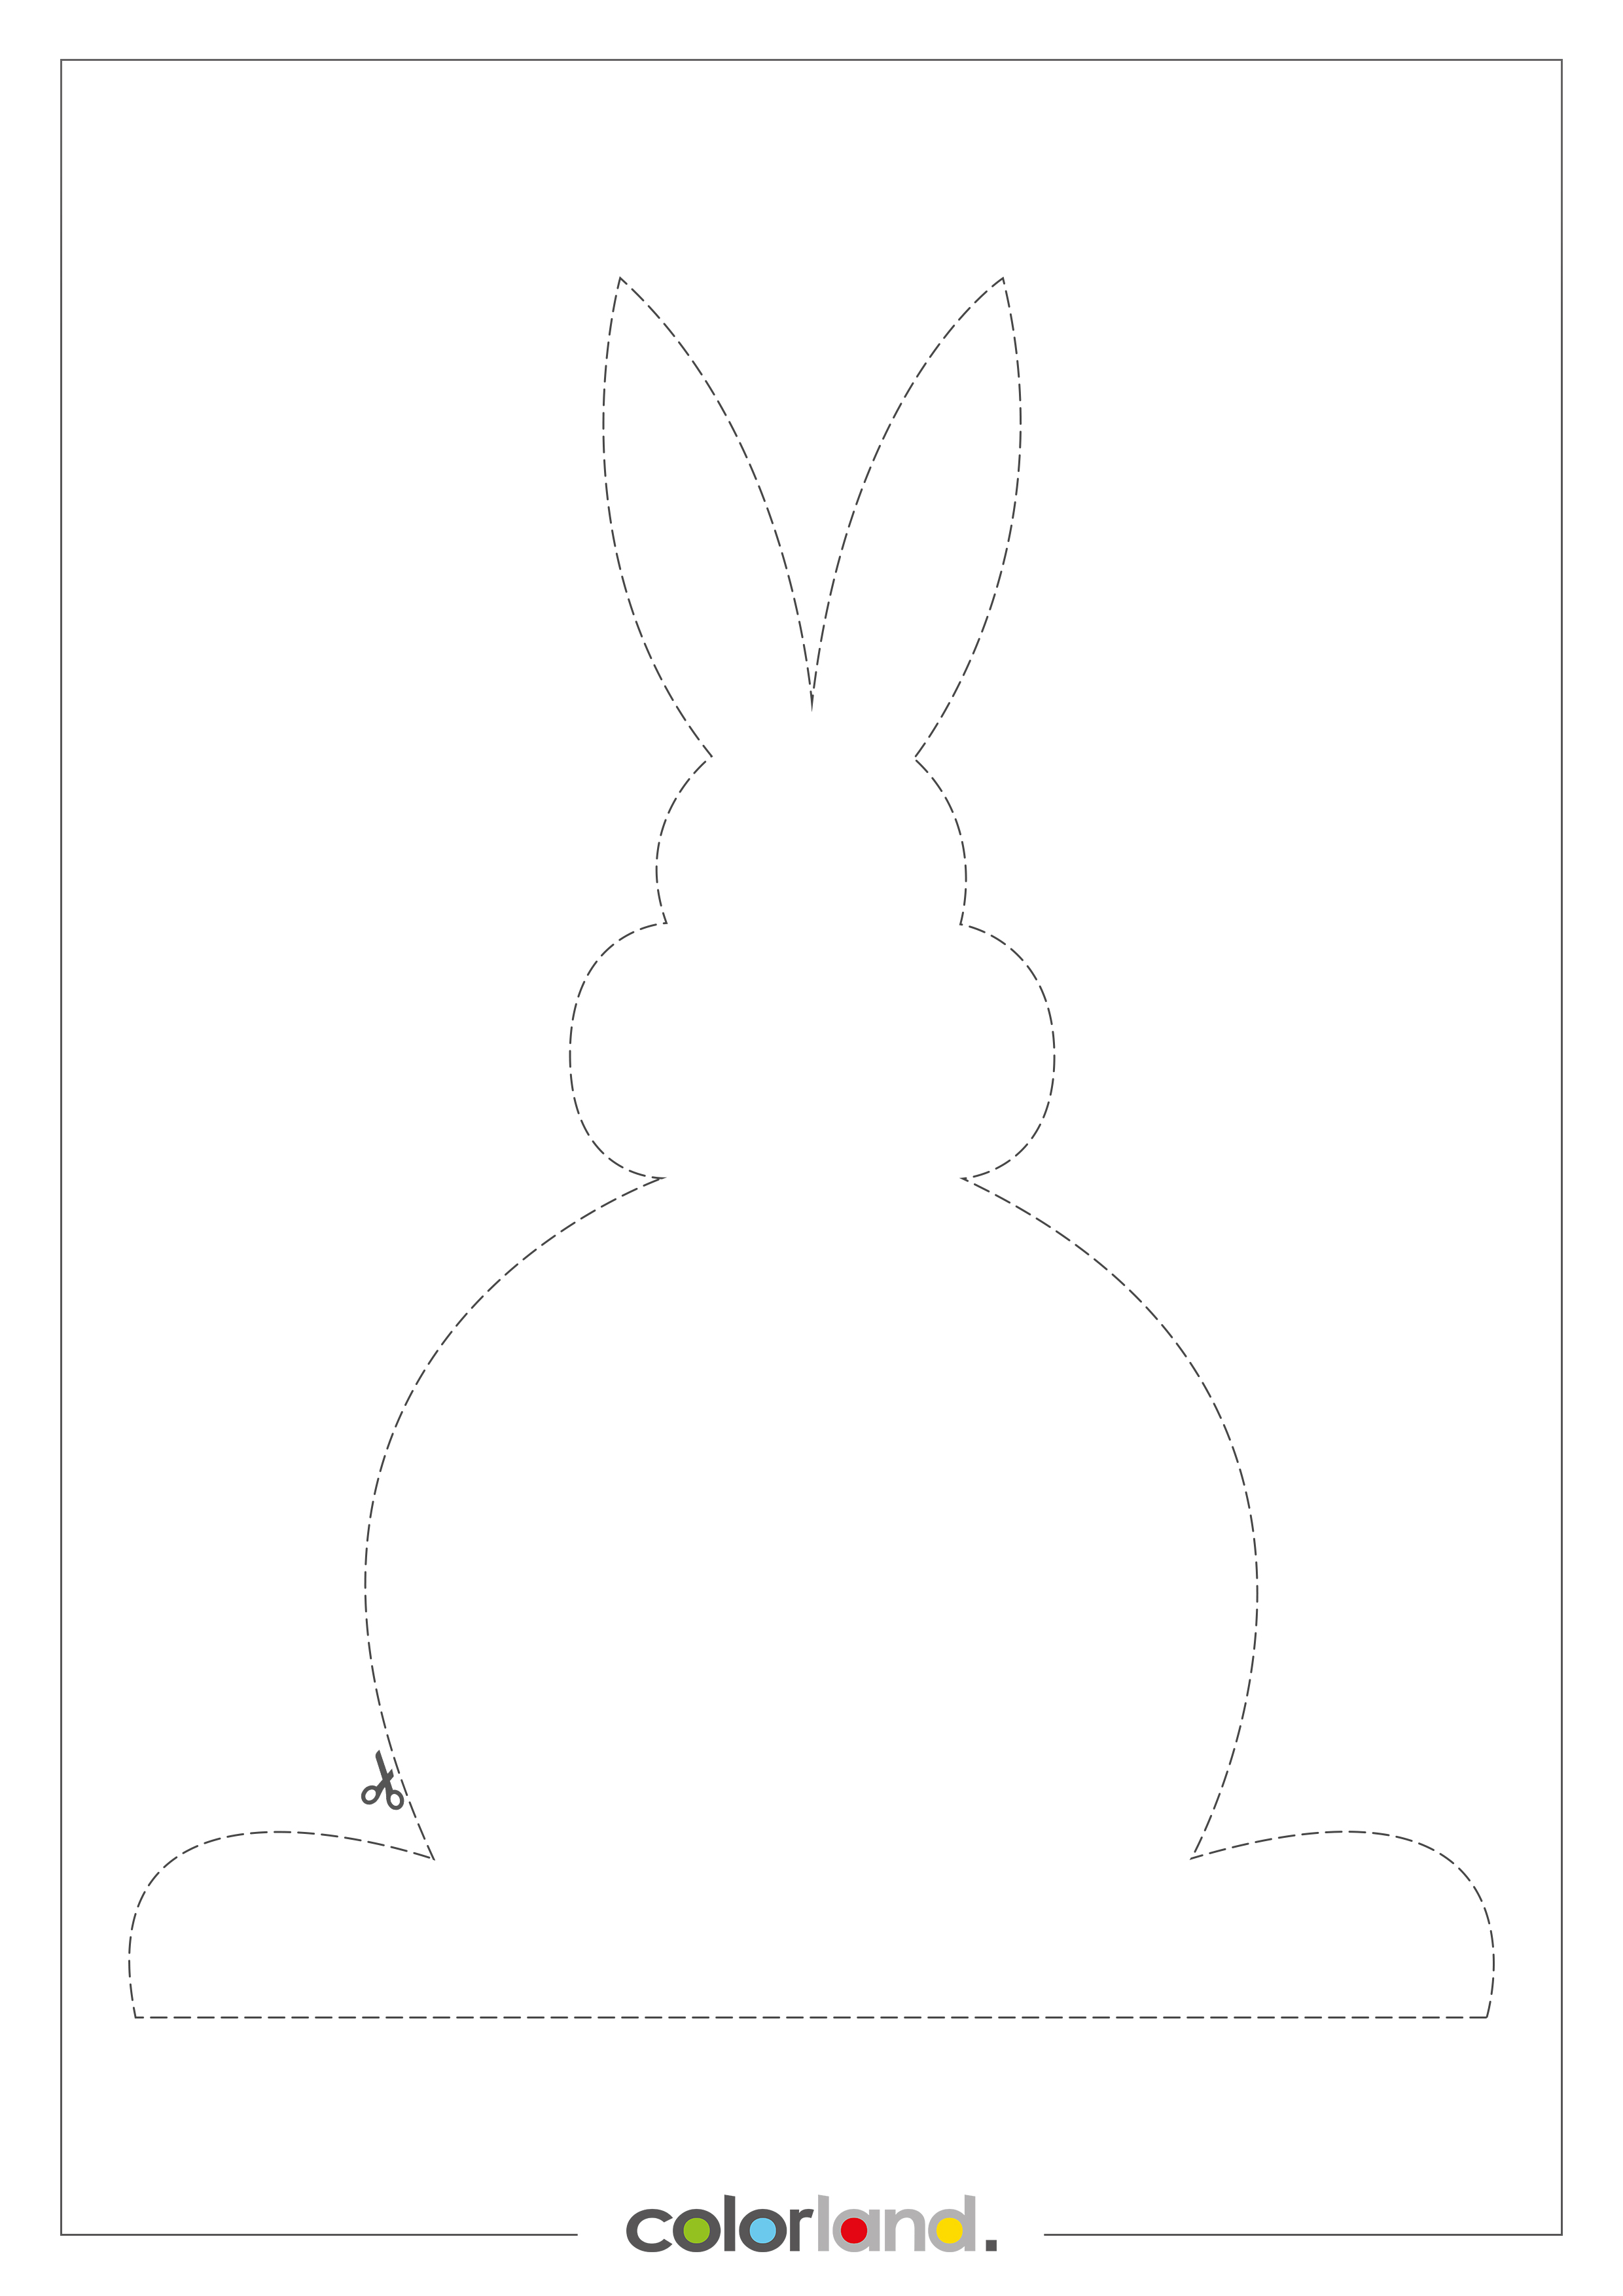 Un Coniglietto Pasquale In 3 Versioni Decorazioni Per La Tavola Di Pasqua Di Colorland Ispirazioni Colorland It